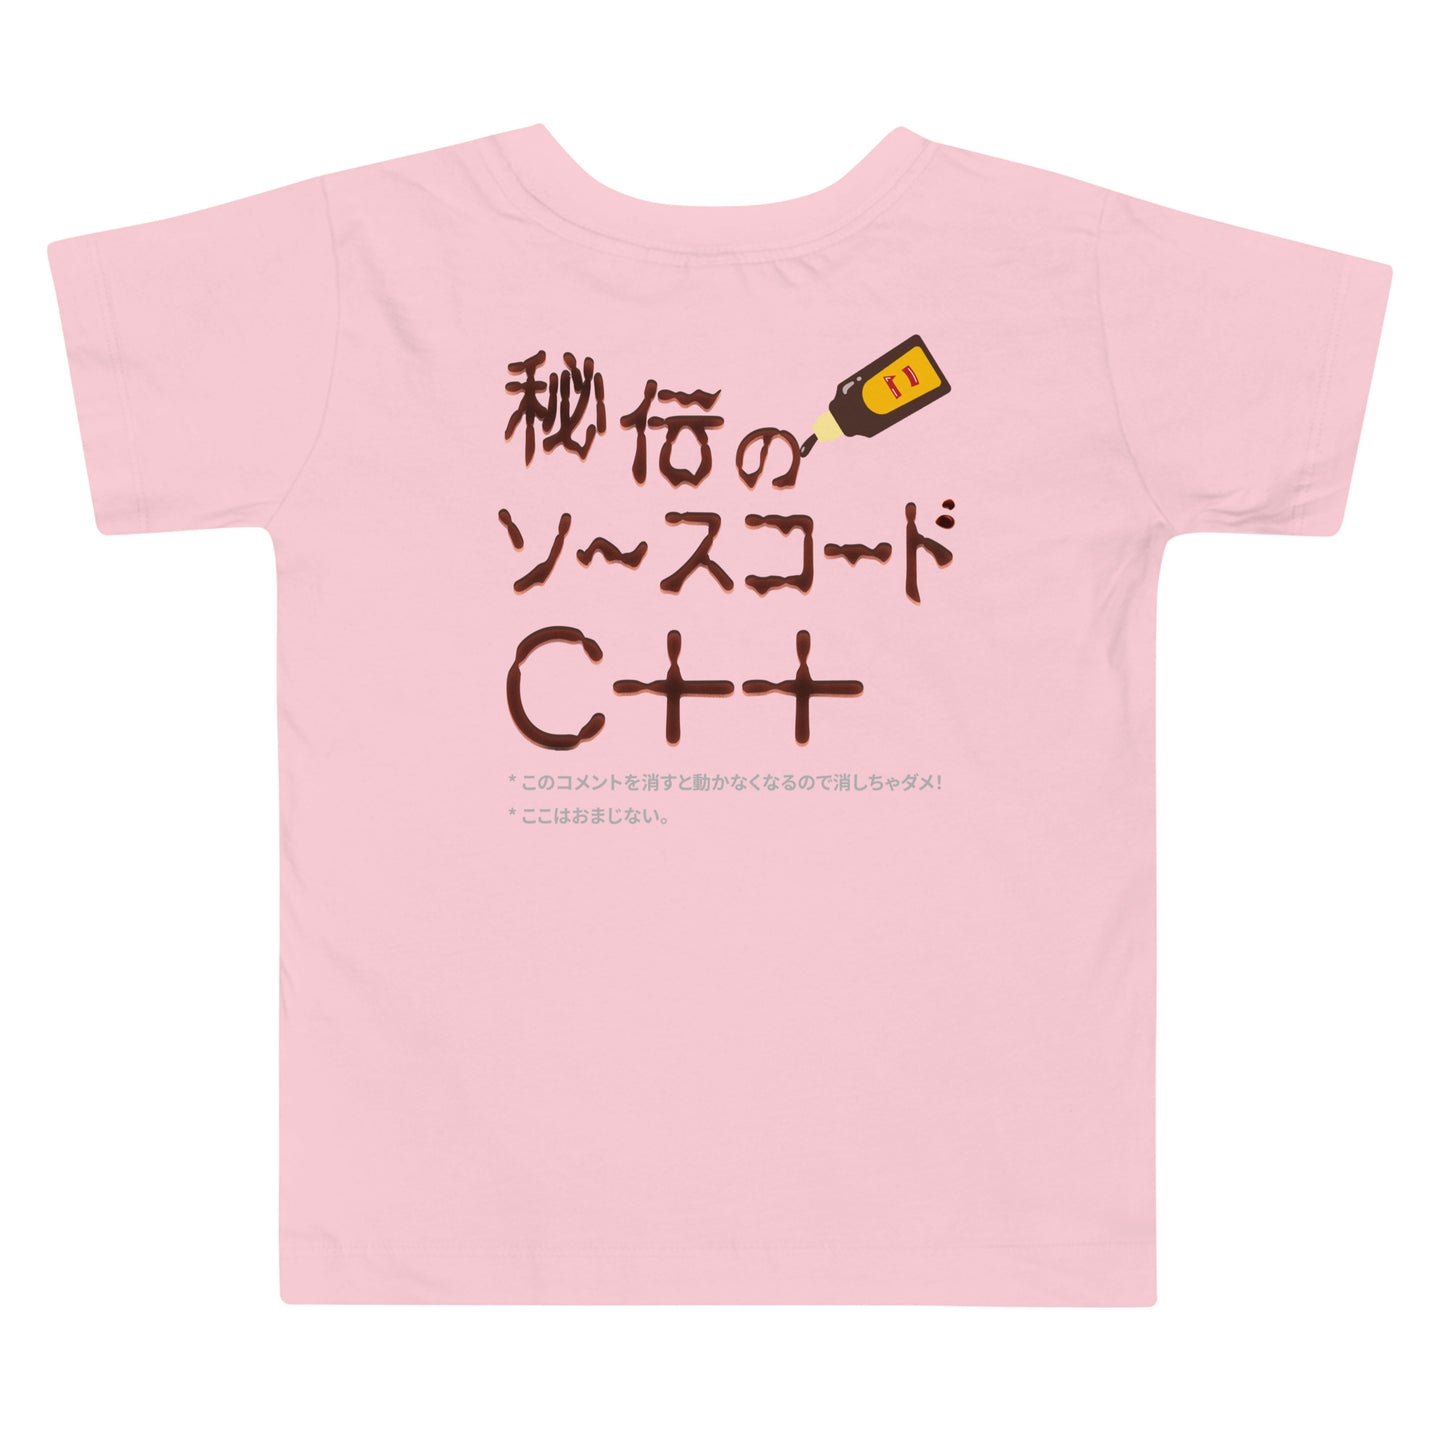 【キッズ】秘伝のソースコード C++ 半袖Tシャツ（両面プリント）